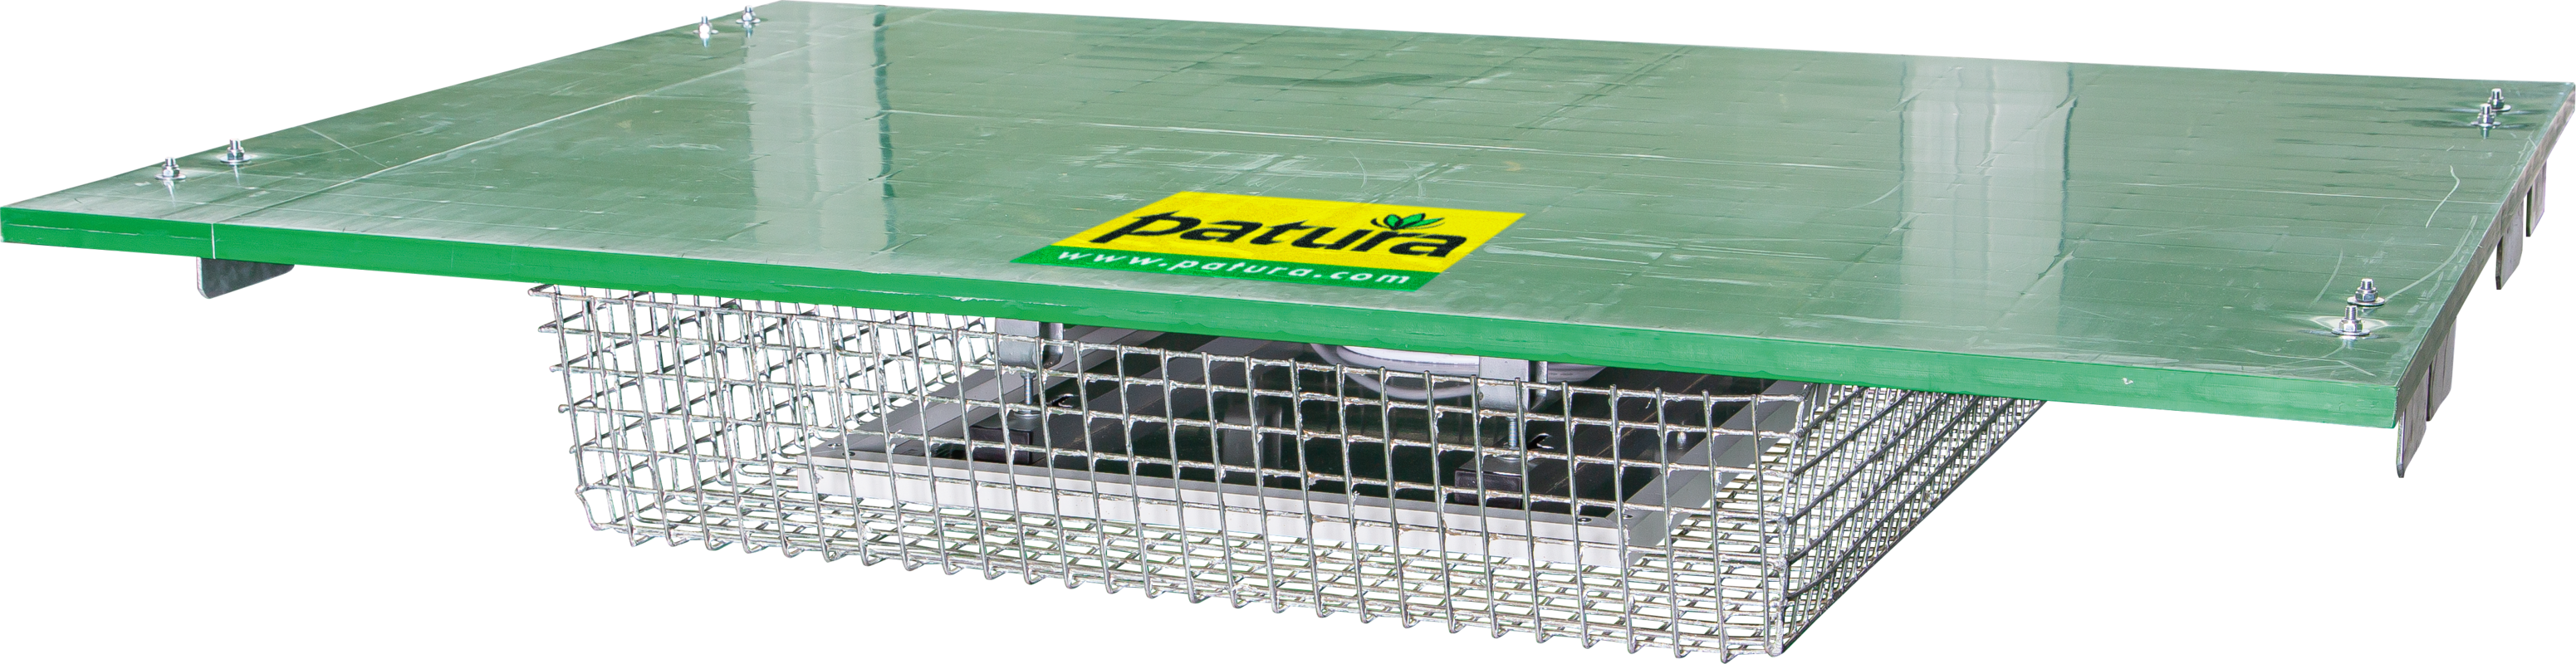 Abdeckung Kälberbox mit Wärmeplatte inkl. Halterahmen und Schutzkorb PATURA Kälberbox 1,20 m